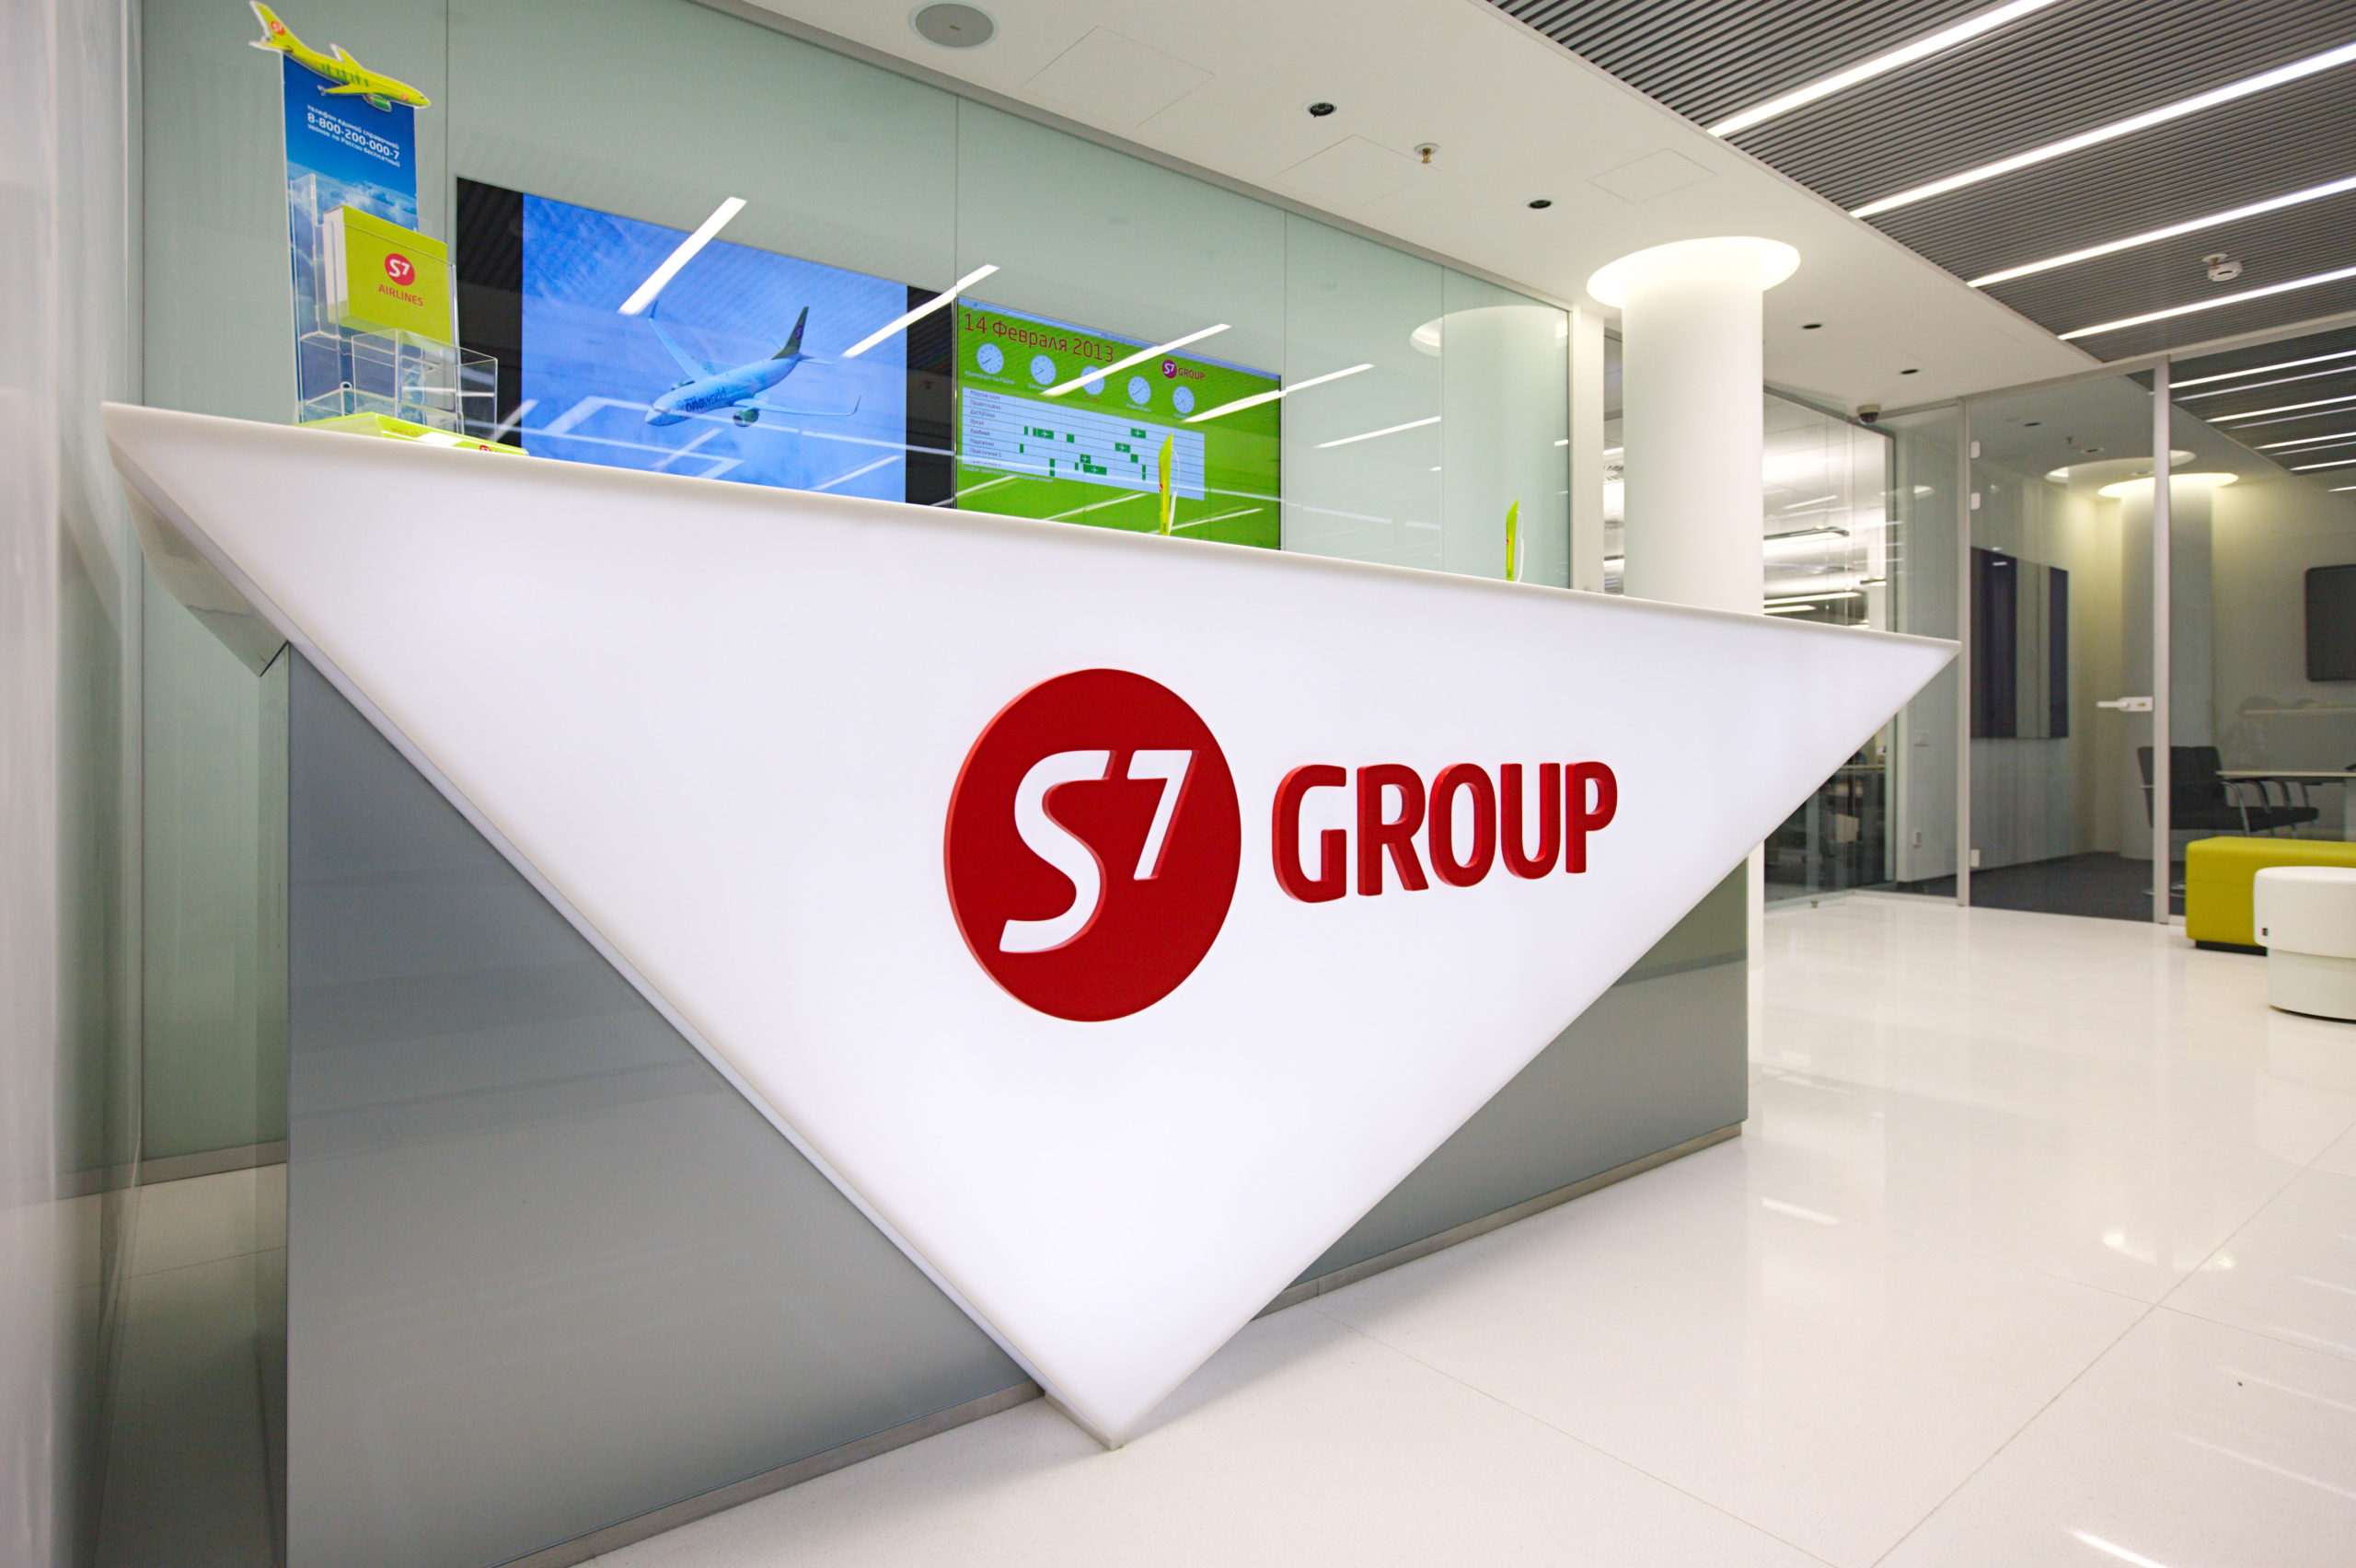 Эс севен купить билет. S7 Group. S7 знак. S7 логотип. S7 фирменные цвета.